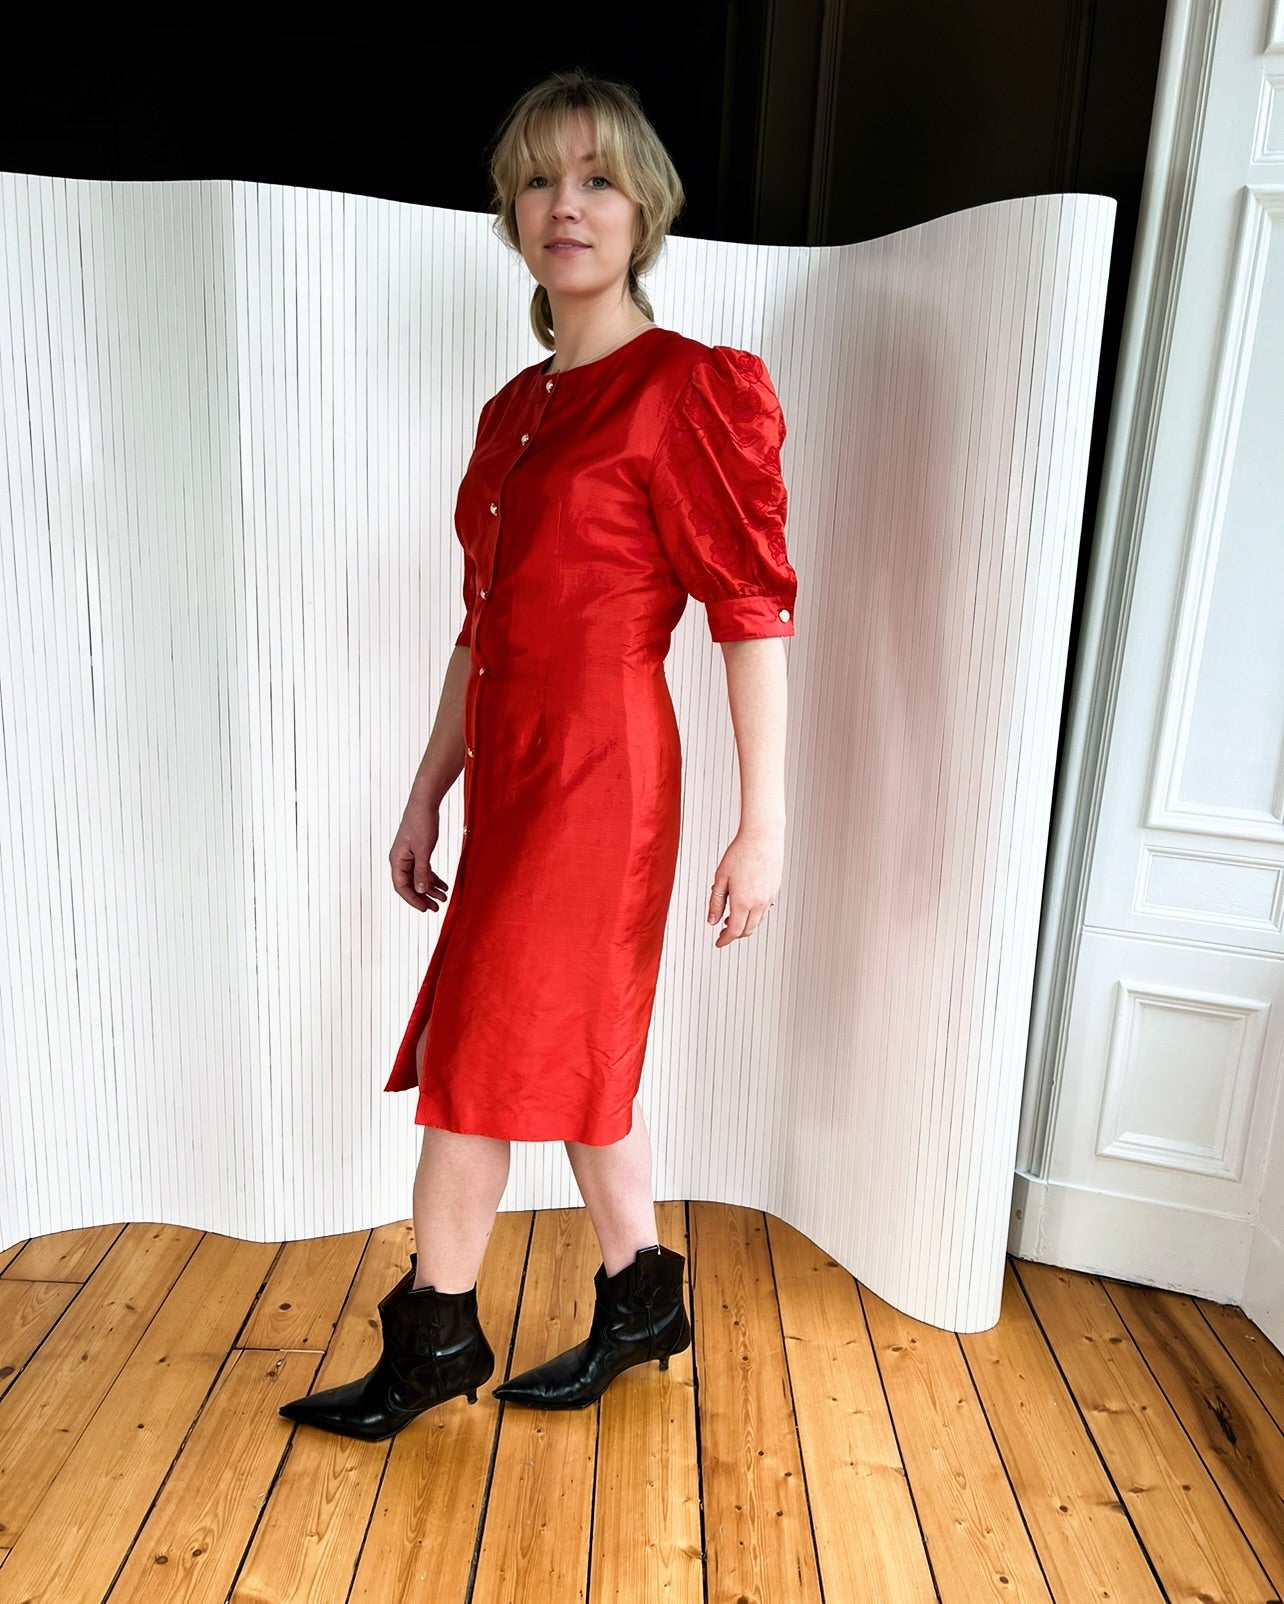 Heartbreaker red silk dress